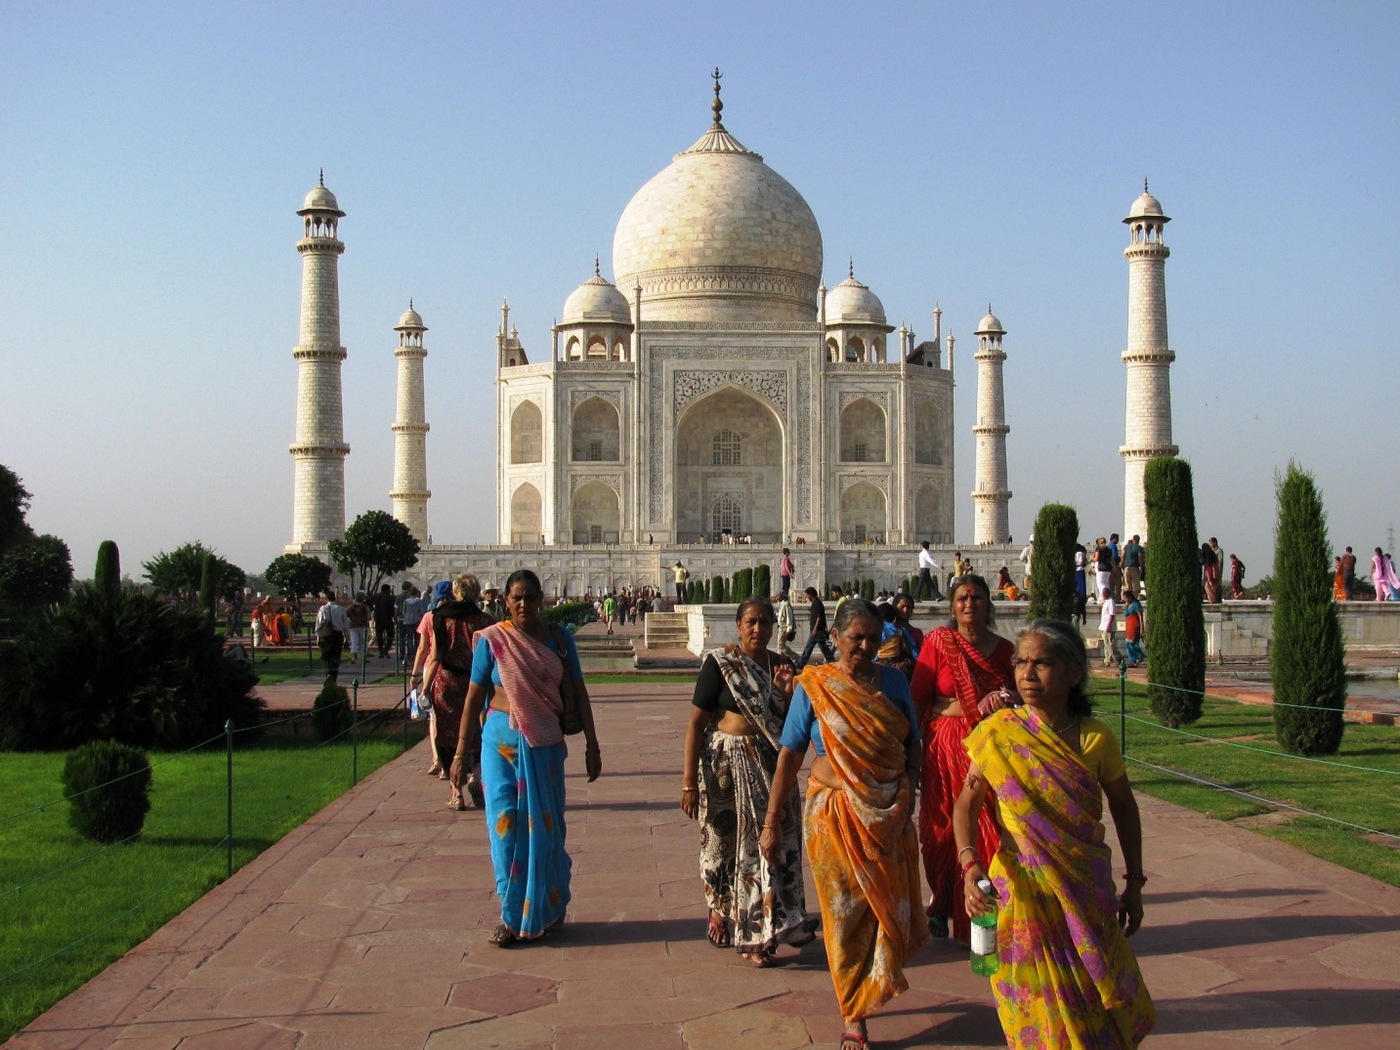 Geotour oferuje – Pięć pereł Indii